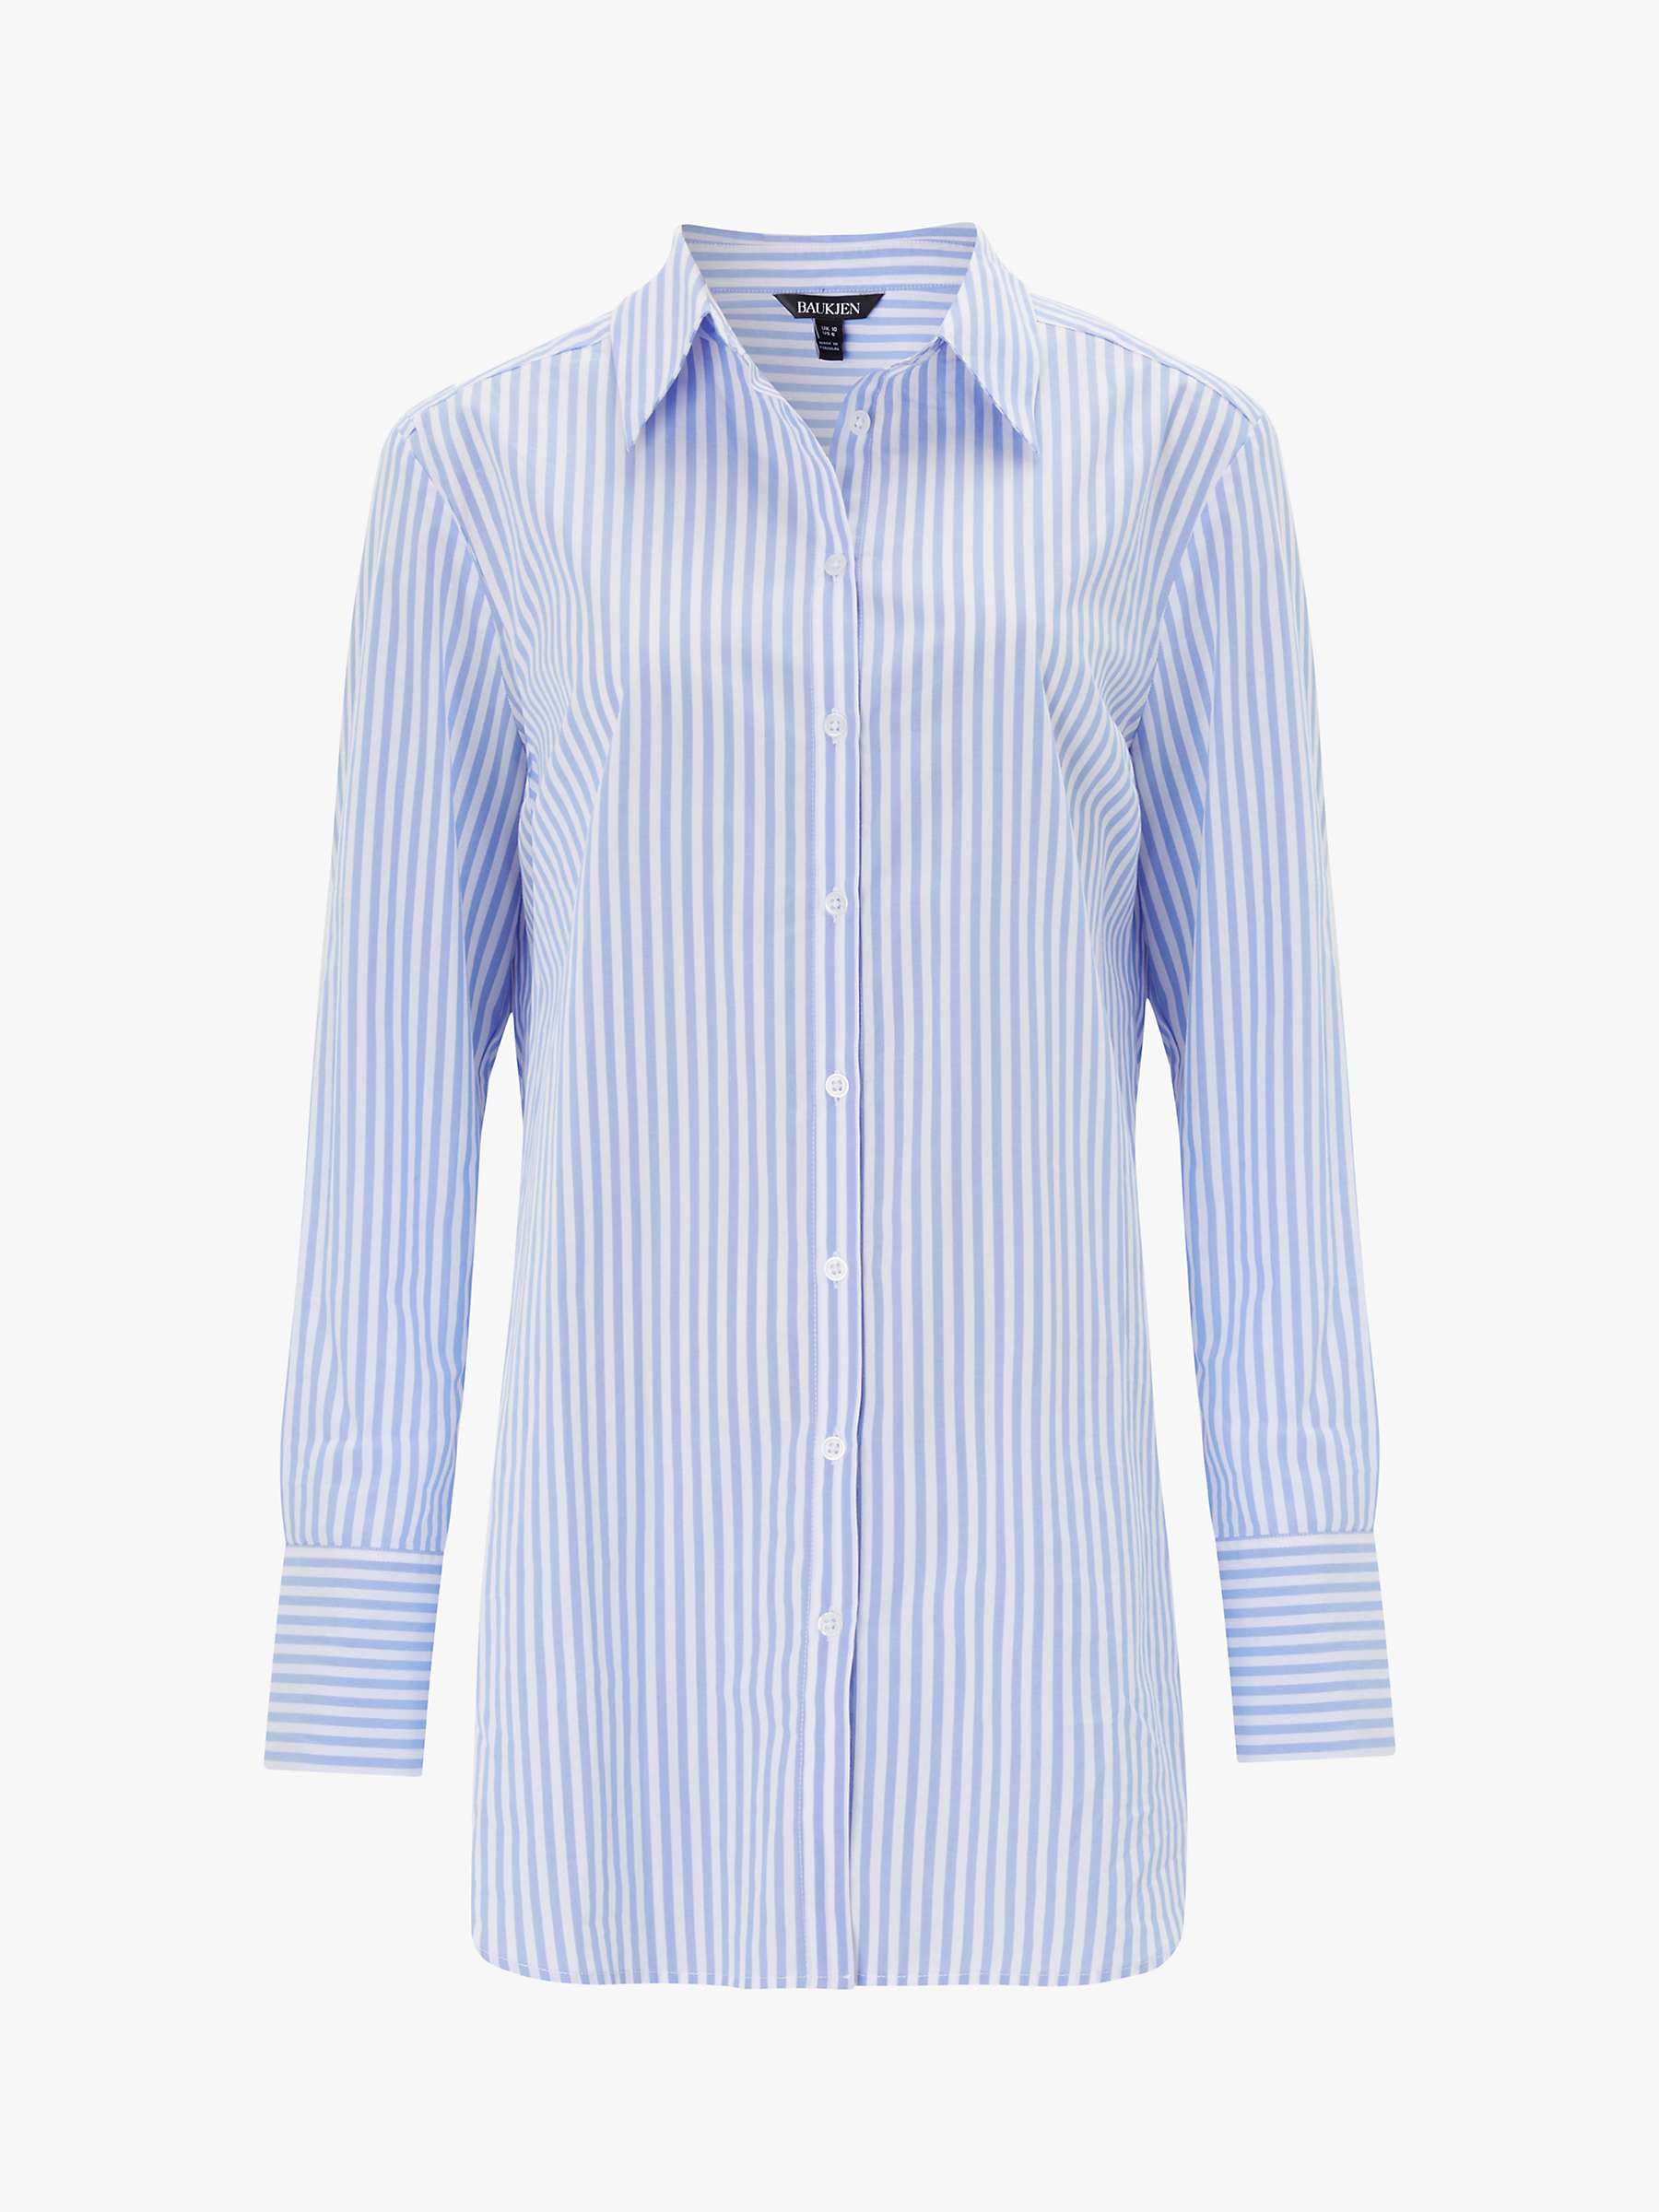 Buy Baukjen Arbor Stripe Cotton Shirt, Sky Blue/White Online at johnlewis.com